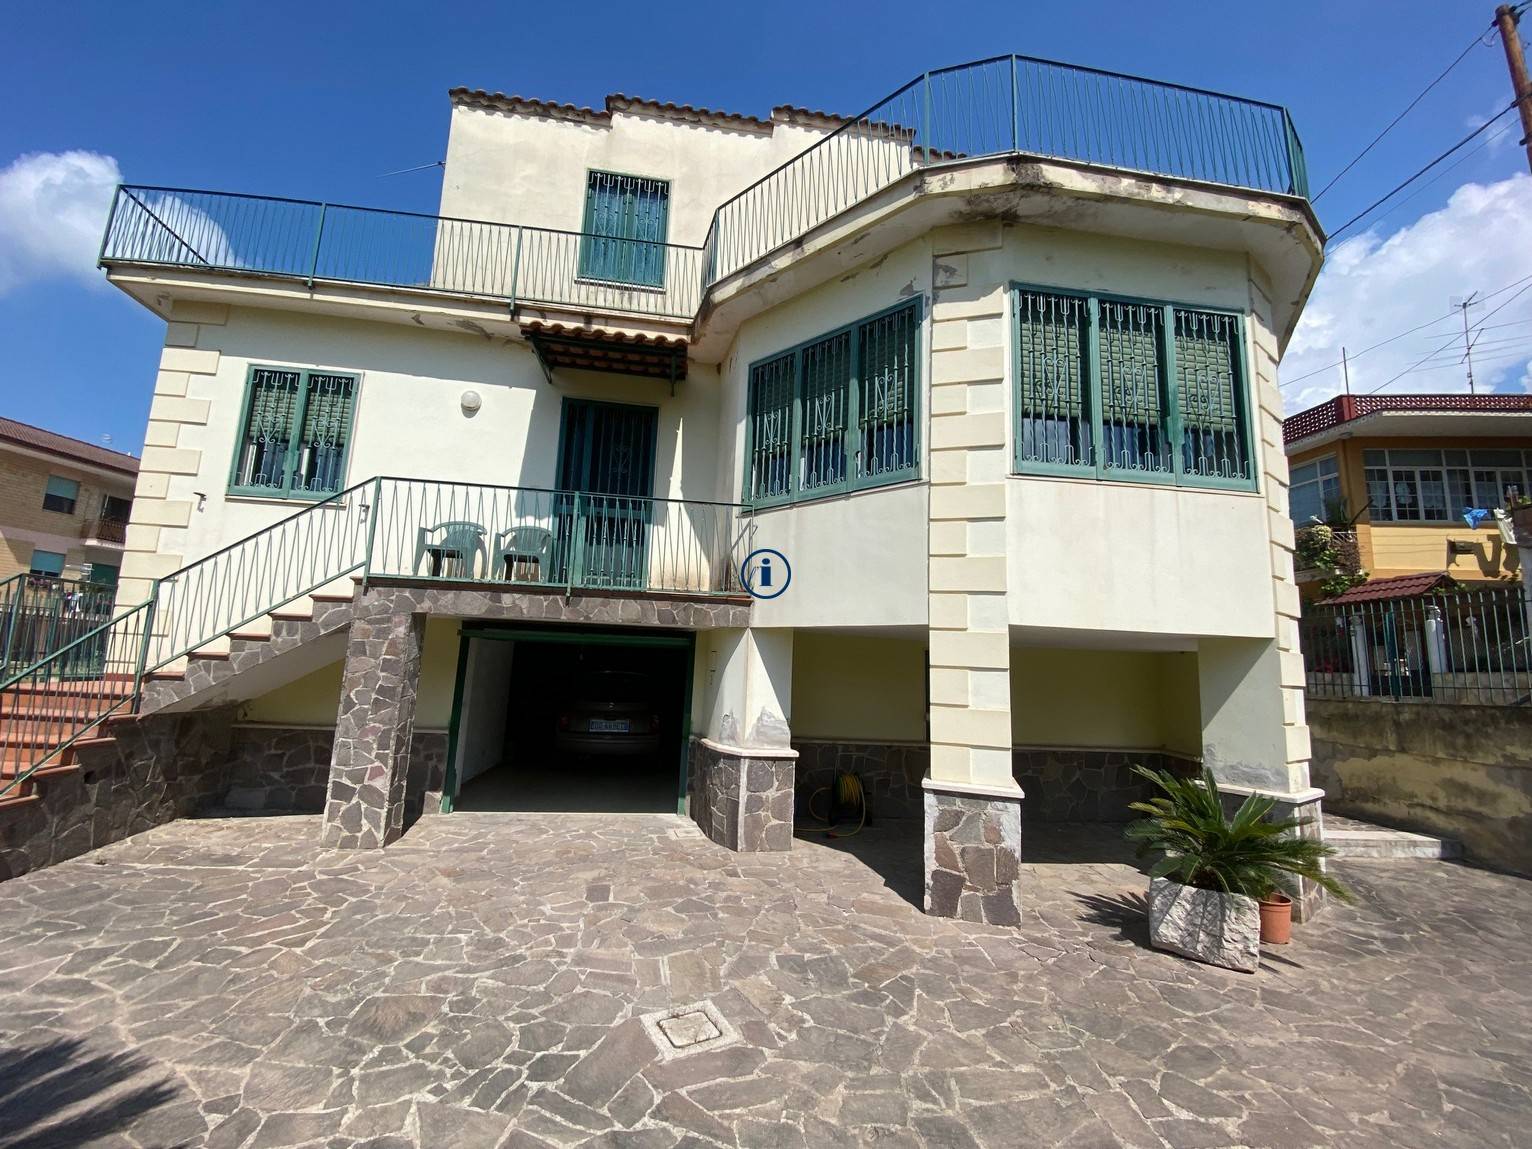 Villa in vendita a Vitulazio, 7 locali, prezzo € 320.000 | CambioCasa.it